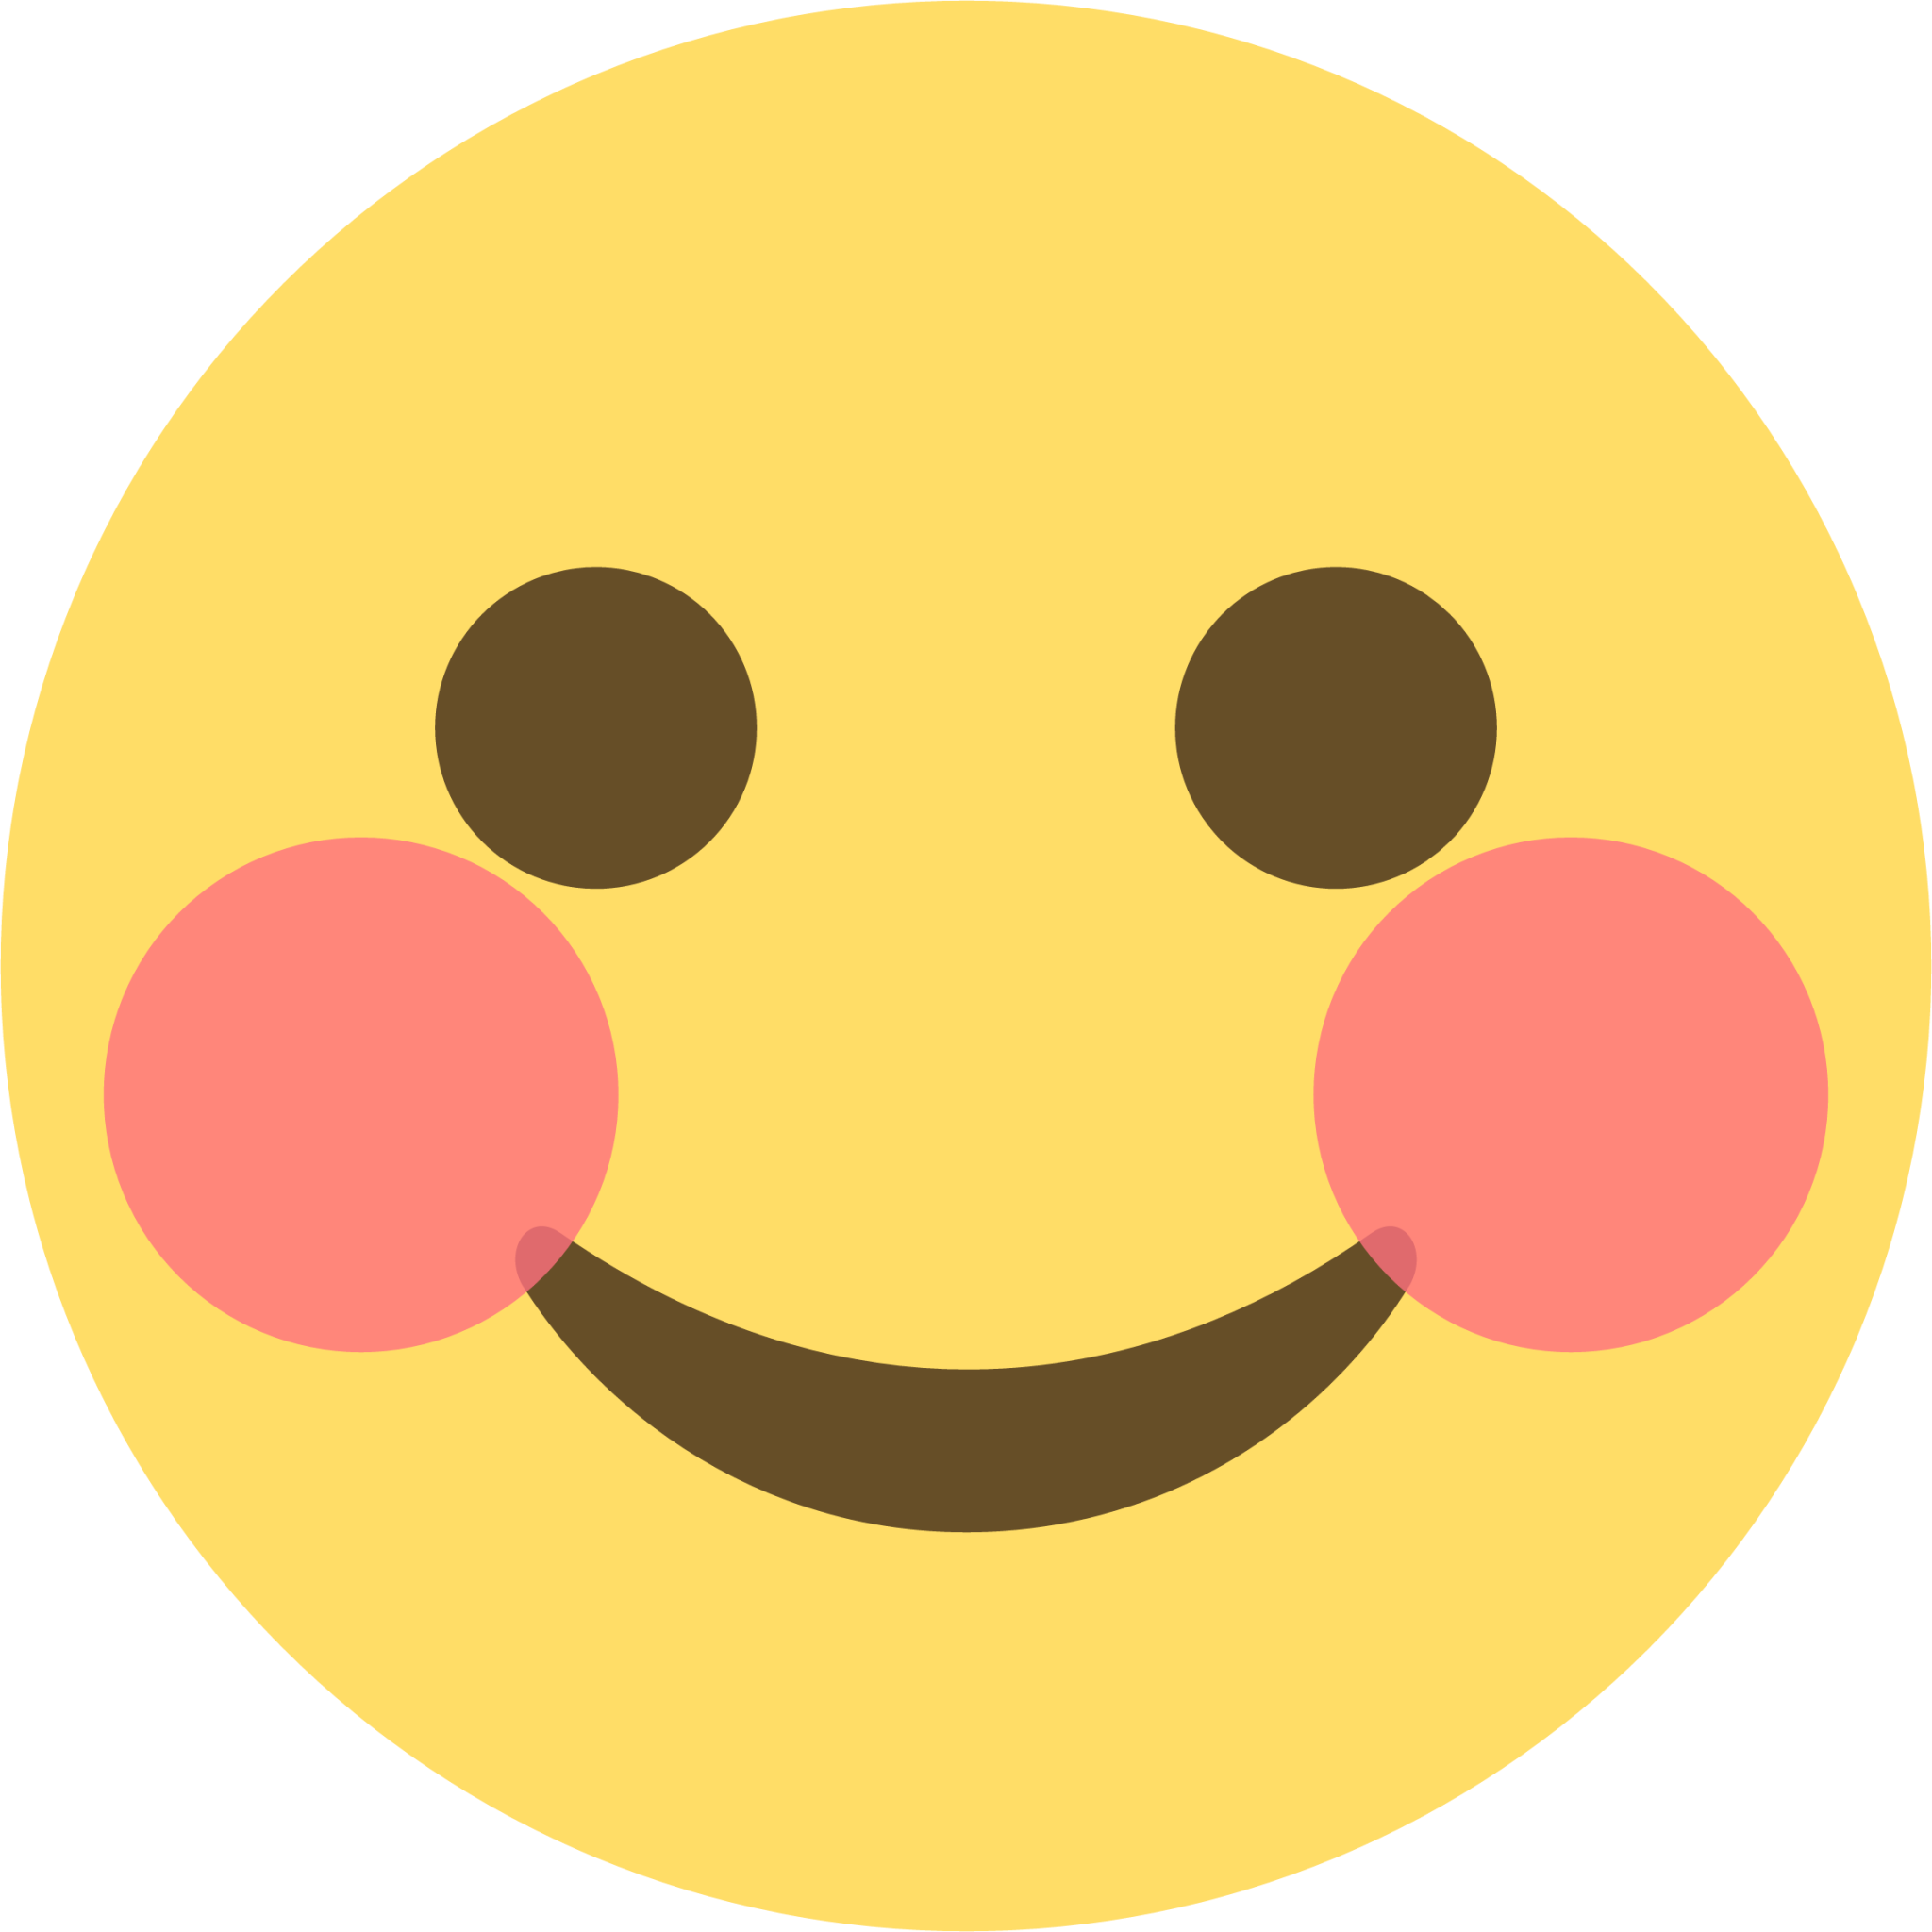 solid smiling face emoji